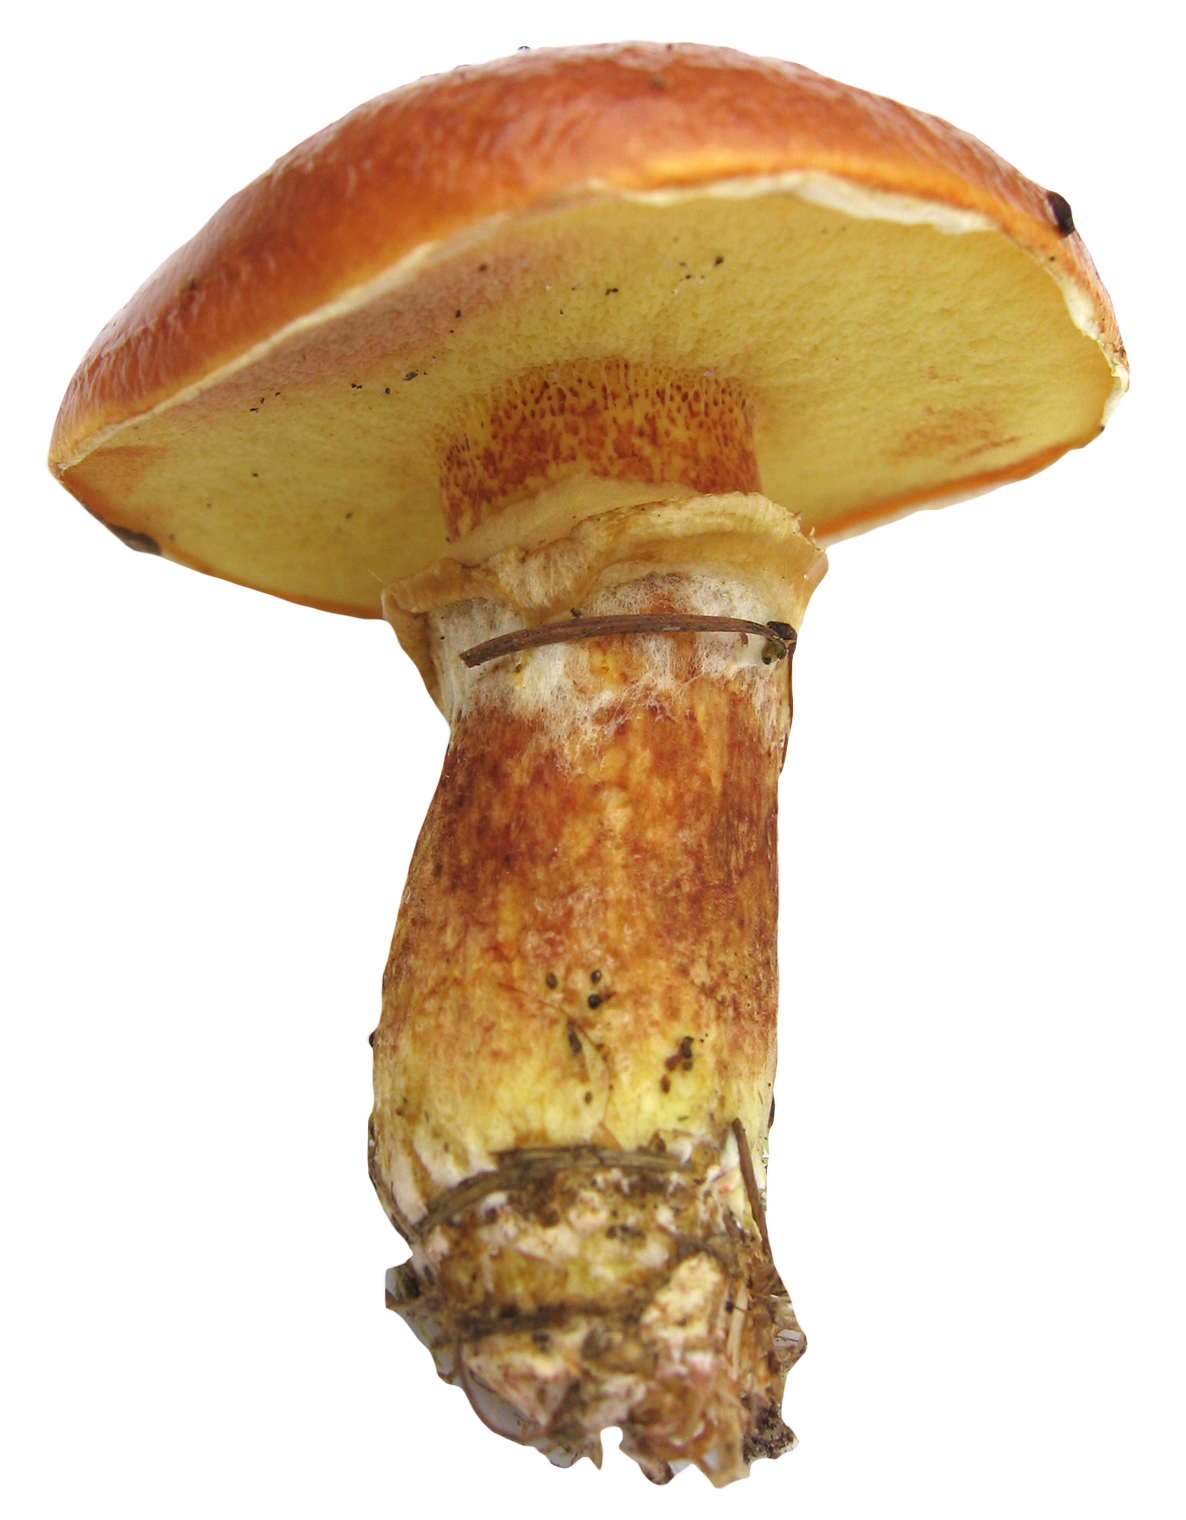 mushroom image pngpix #9072